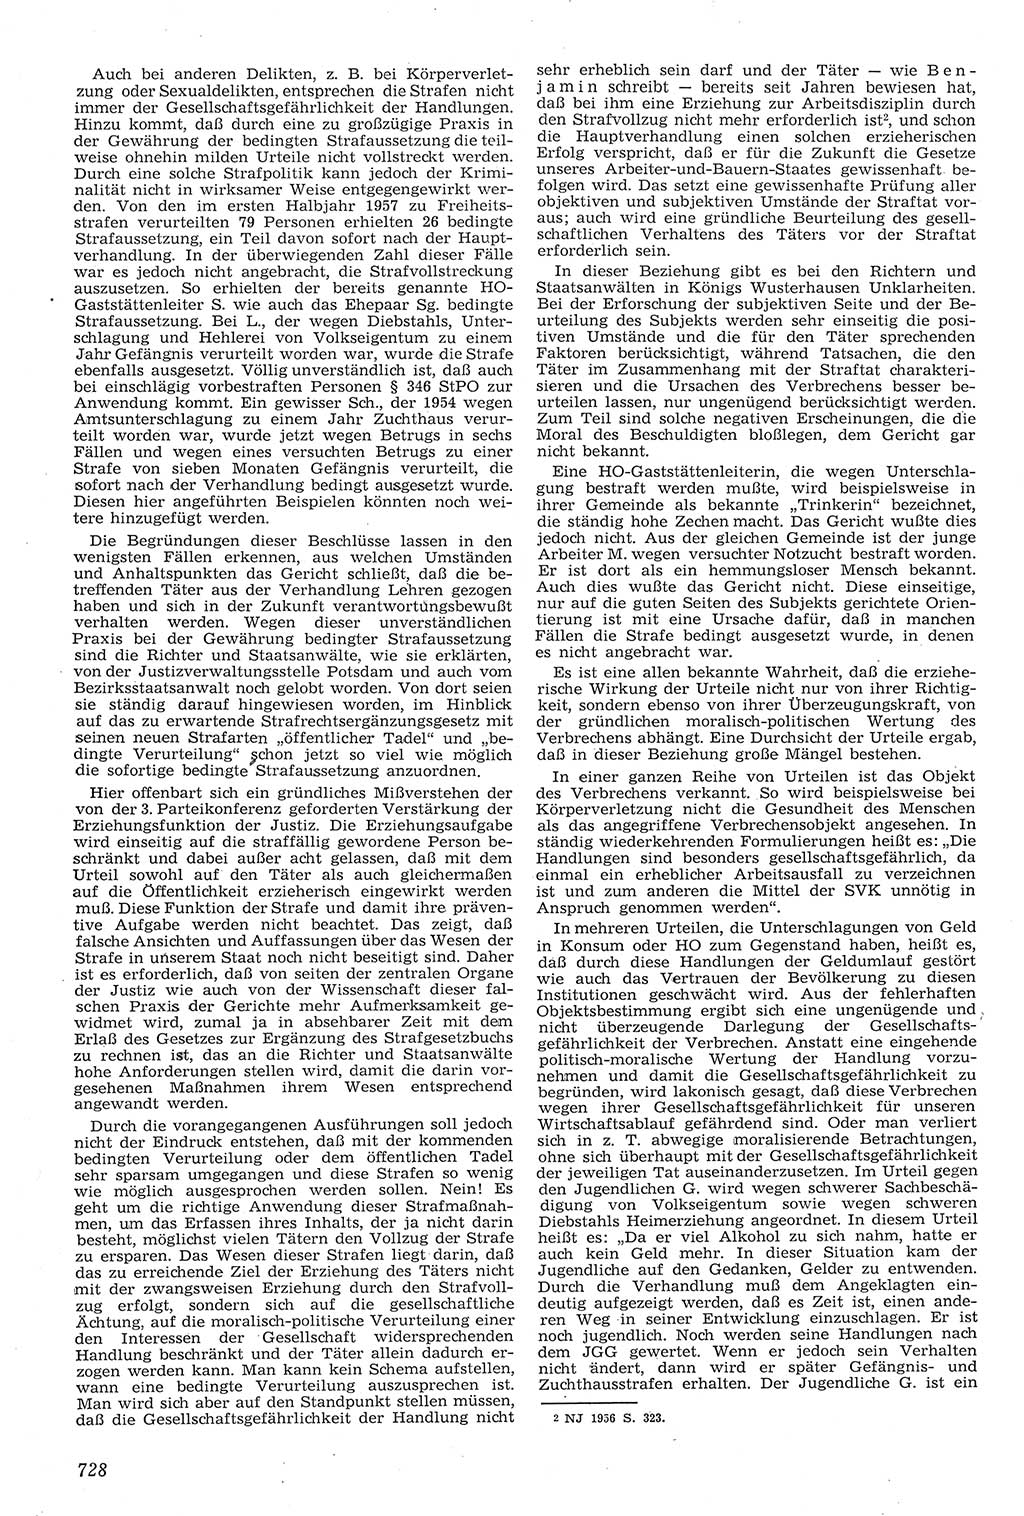 Neue Justiz (NJ), Zeitschrift für Recht und Rechtswissenschaft [Deutsche Demokratische Republik (DDR)], 11. Jahrgang 1957, Seite 728 (NJ DDR 1957, S. 728)